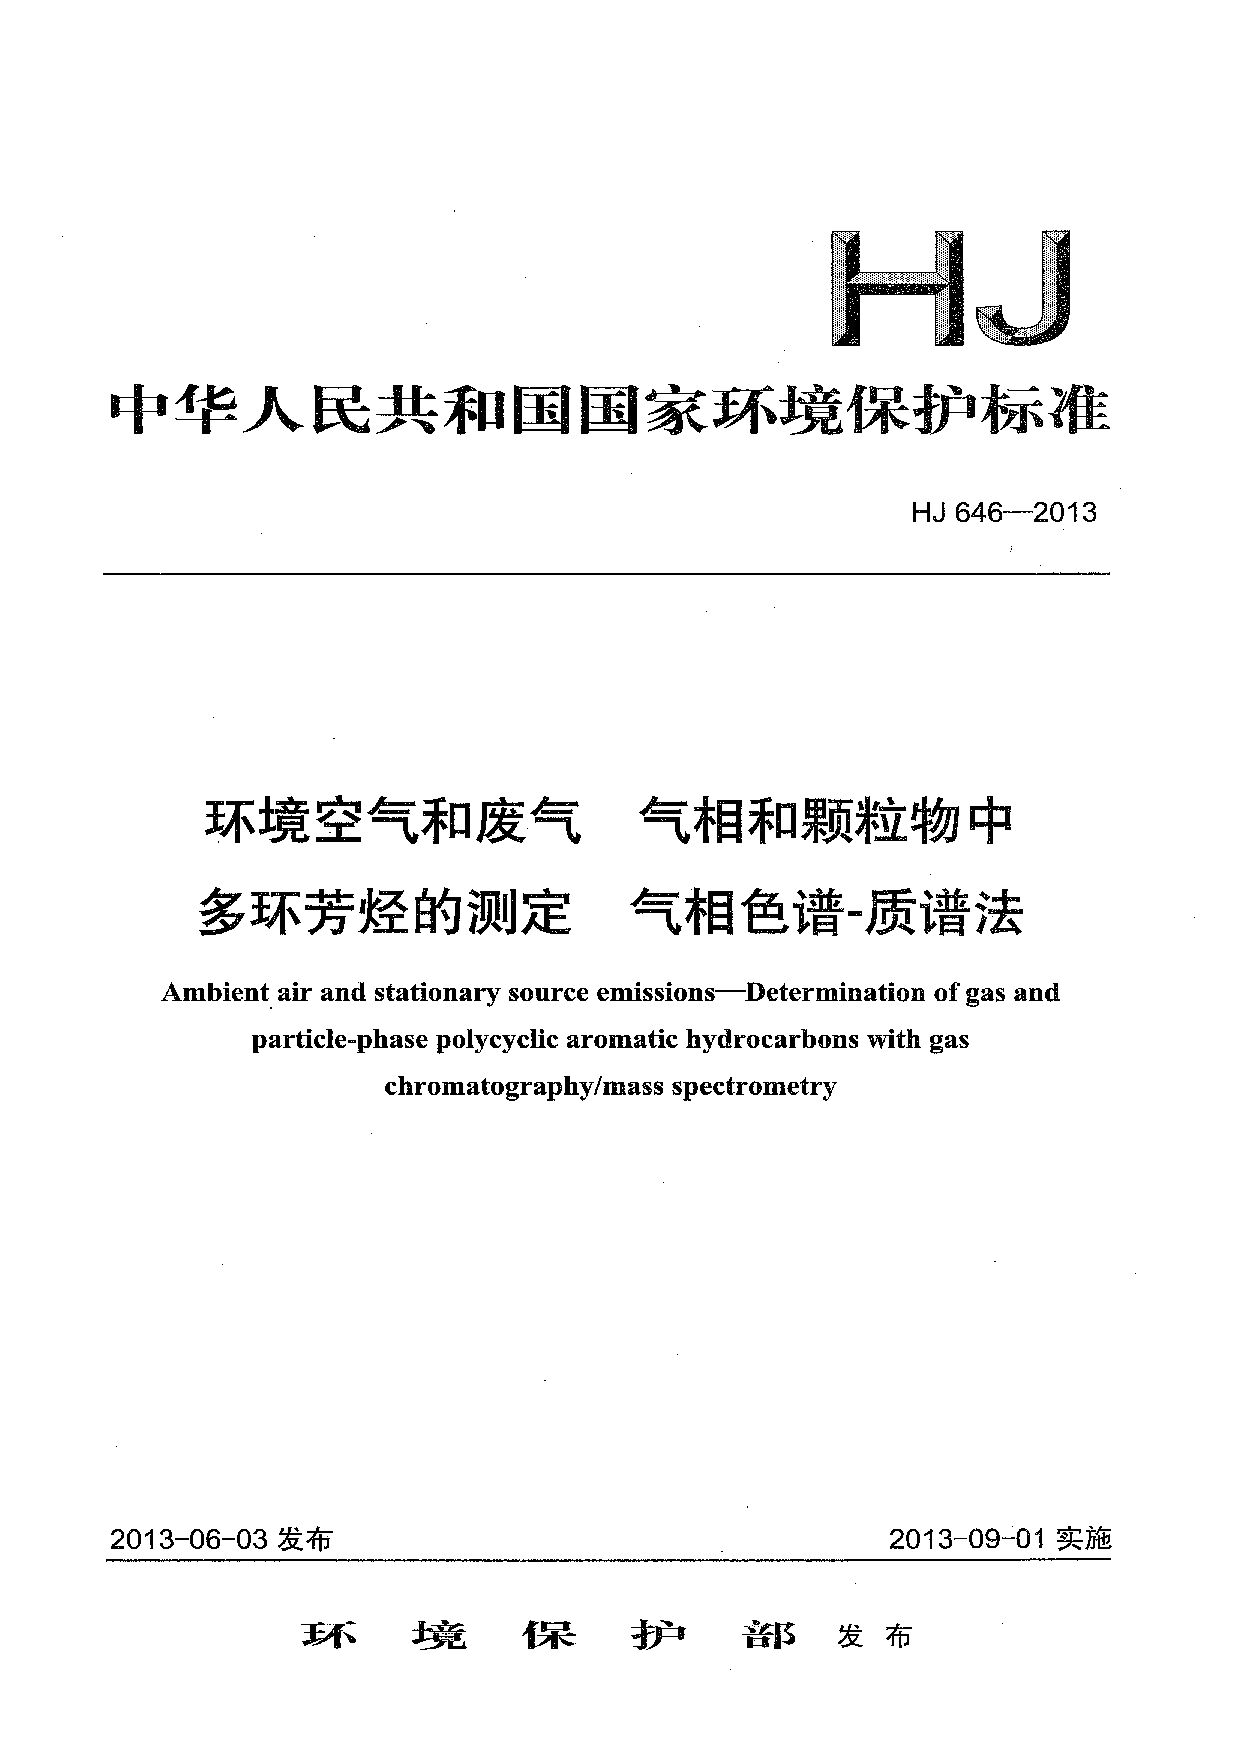 HJ 646-2013封面图